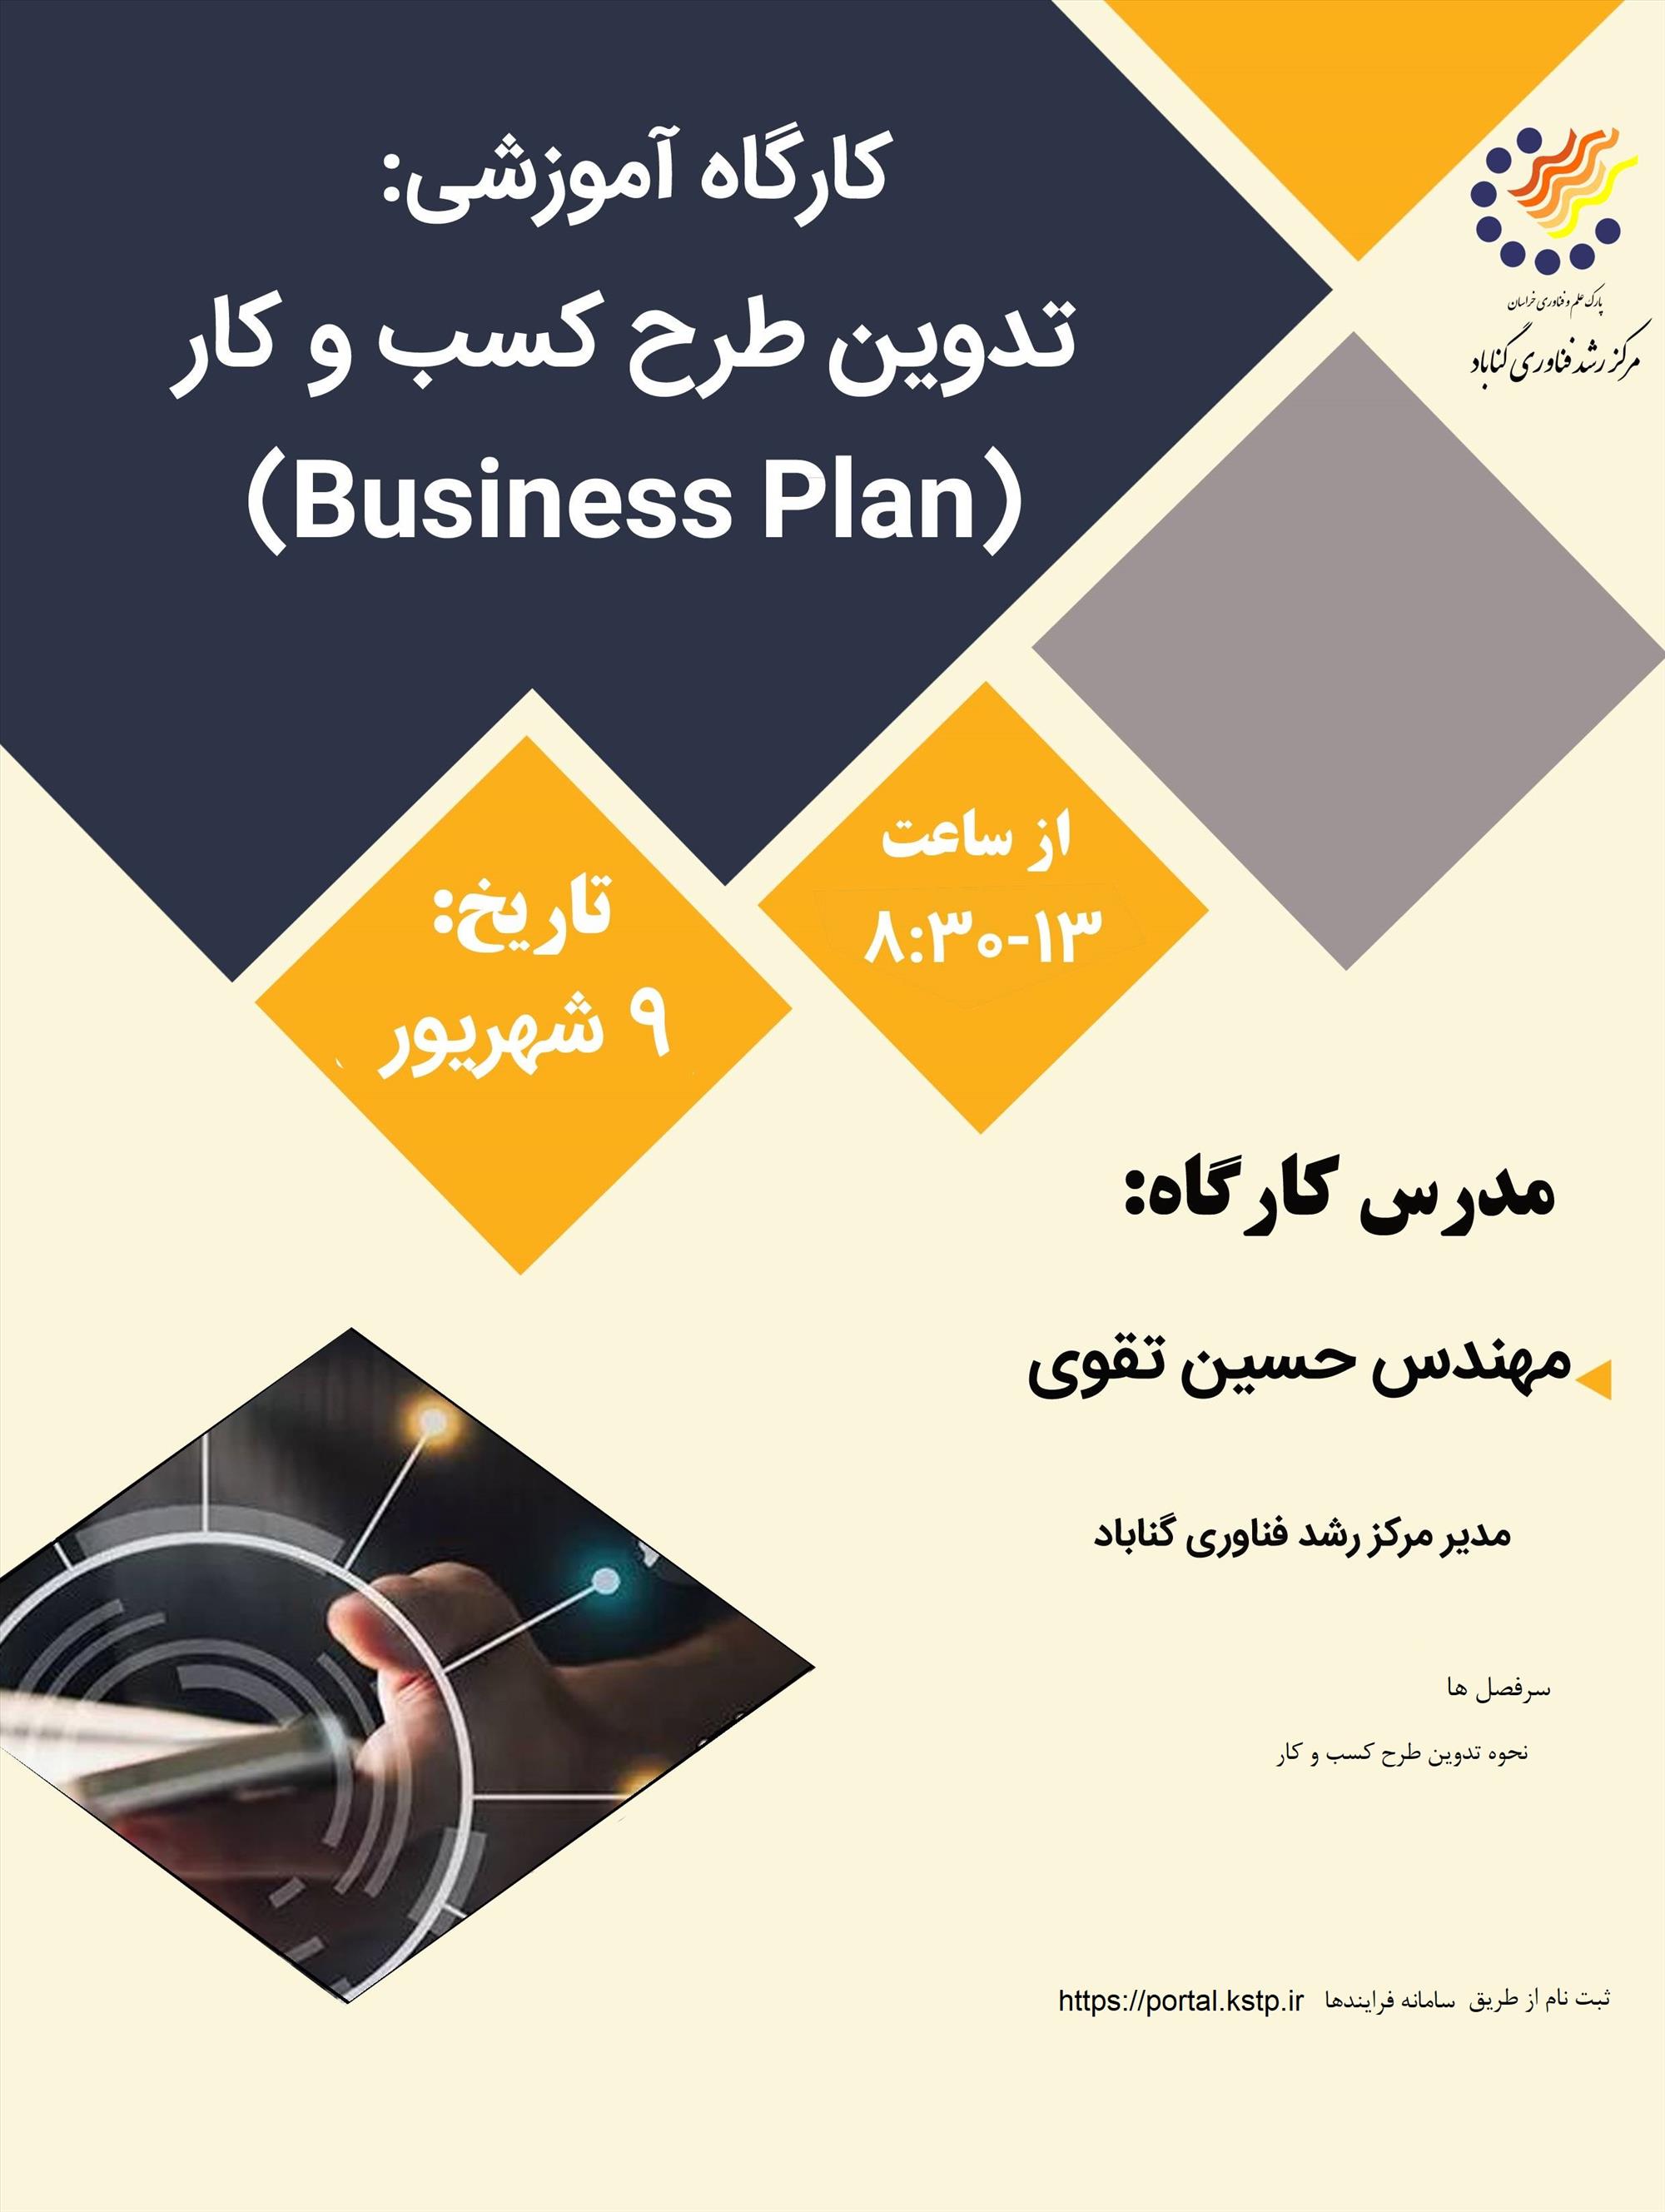 تدوین طرح کسب وکار (Business Plan) ) (ویژه مرکز رشد گناباد)